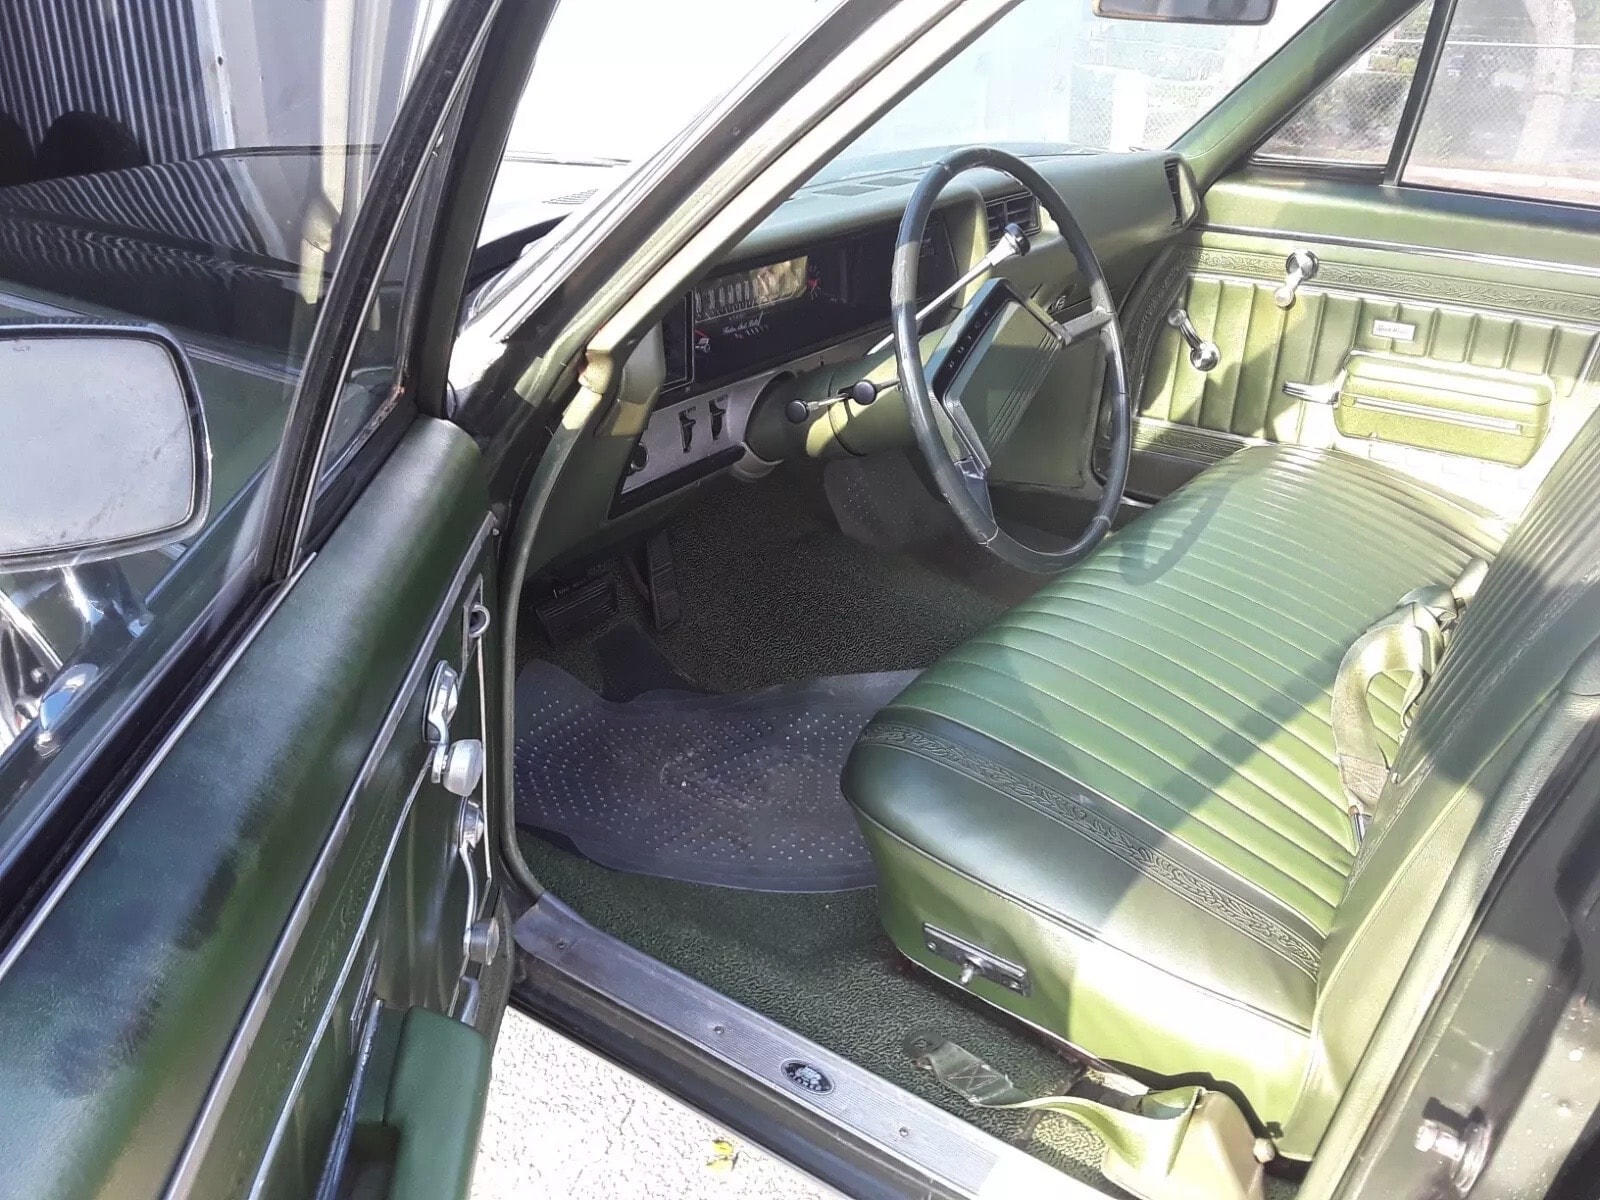 1969 Buick Sport Wagon in Pristine Condition